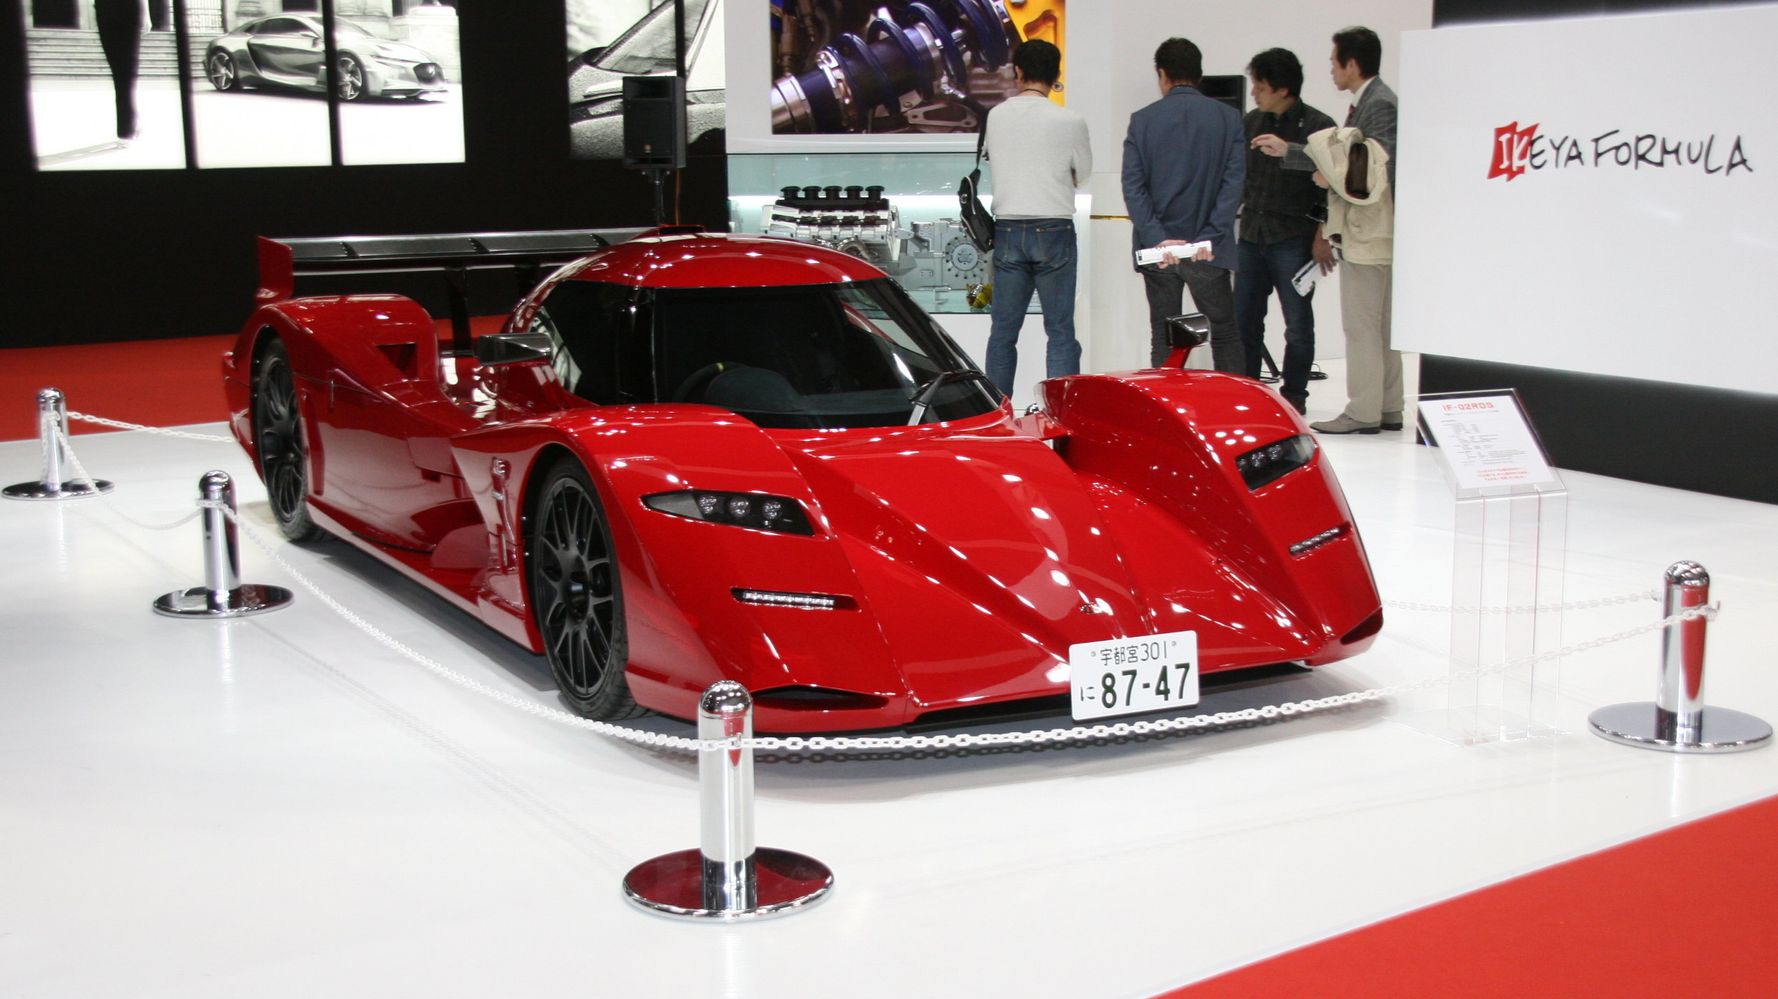 世界に1台だけの国産スポーツカー 誇らしげな宇都宮ナンバーの理由は 東京モーターショー17 ハフポスト